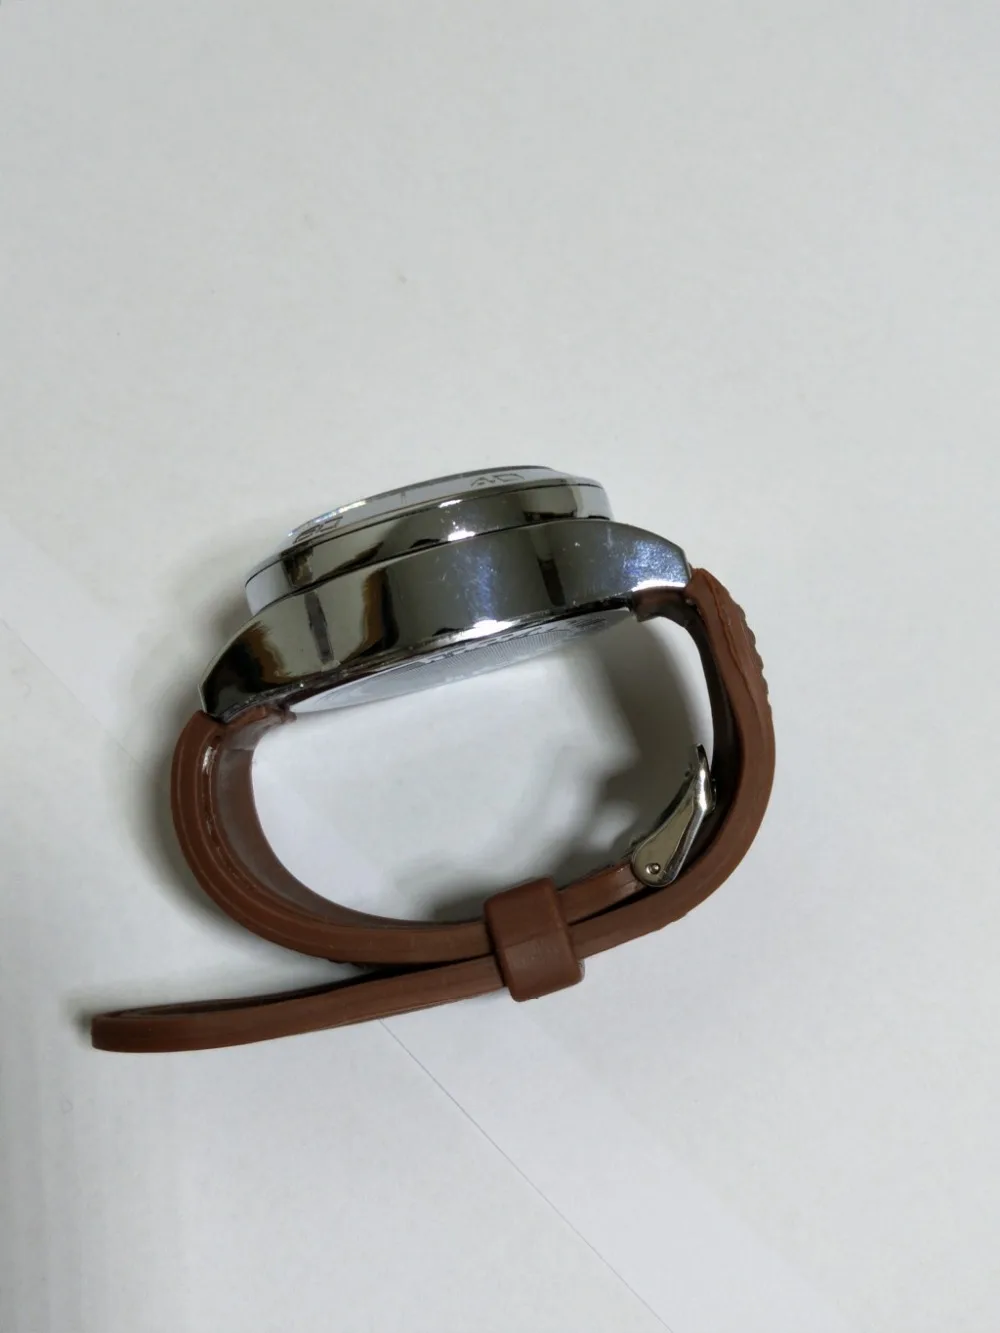 1 шт. F776 перезаряжаемые USB Зажигалка часы электронные часы мужские кварцевые наручные часы ветрозащитный беспламенный прикуриватель